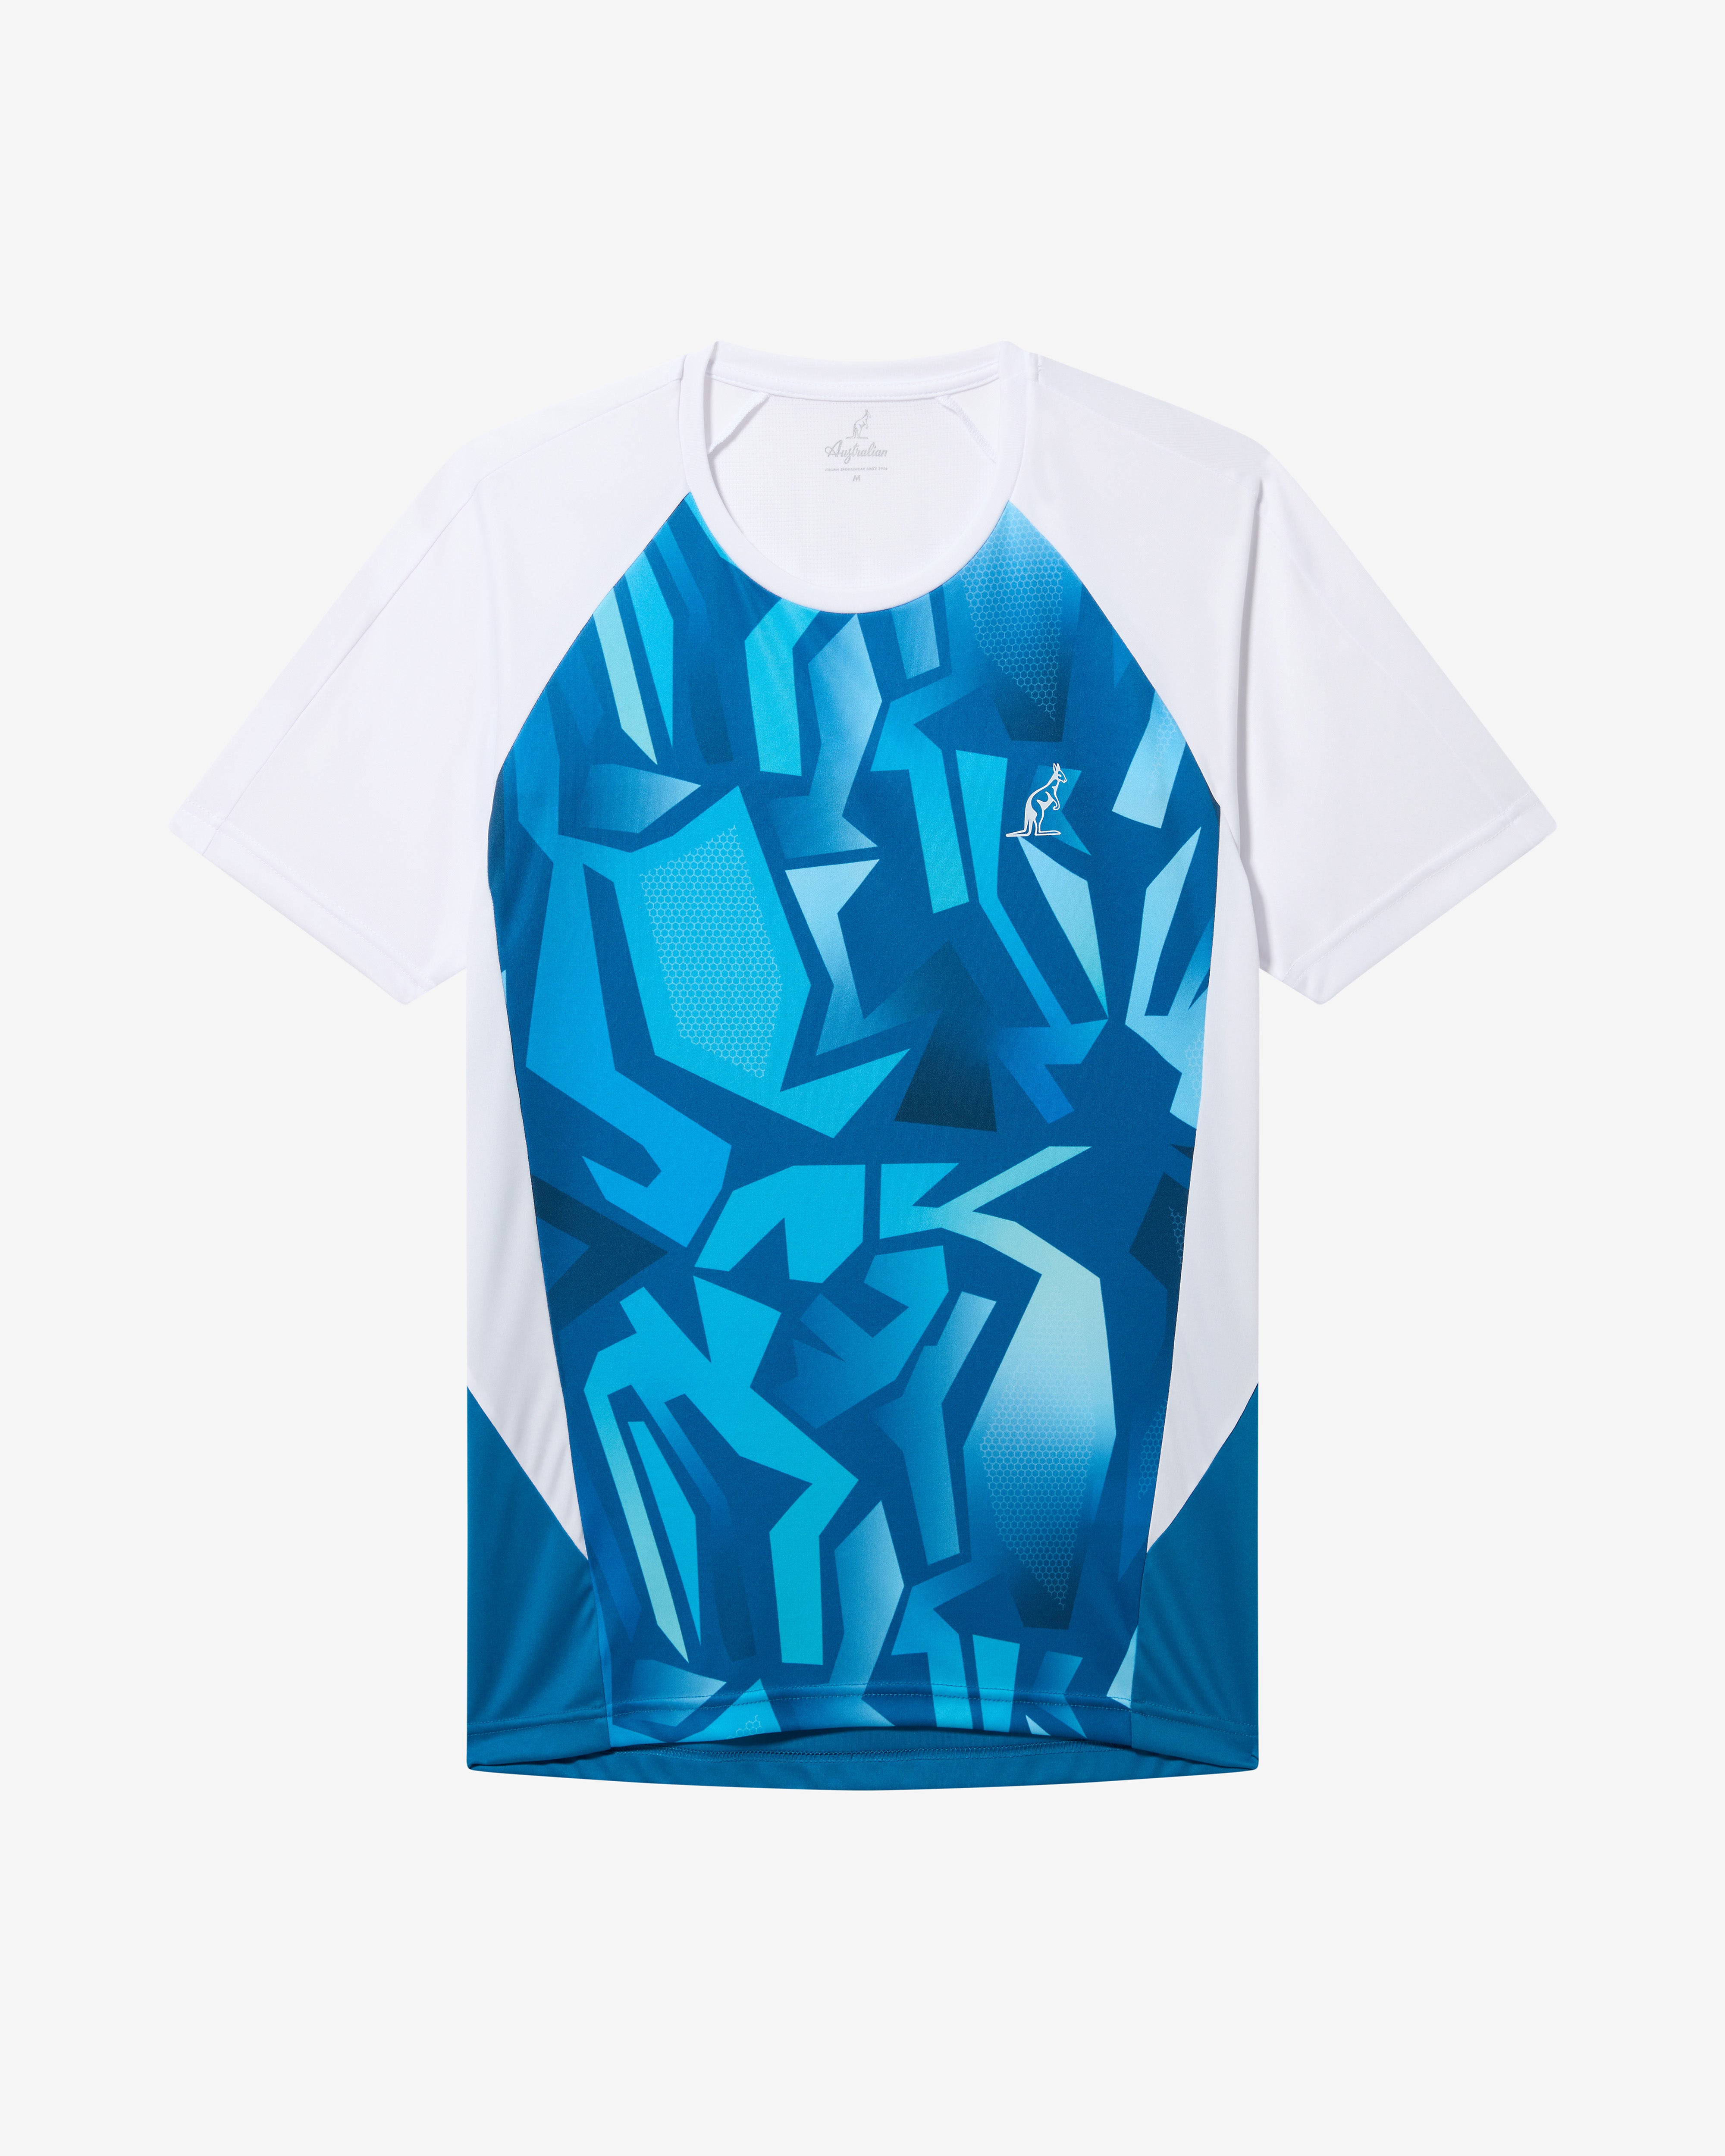 Abstract T-shirt: Australian Tennis